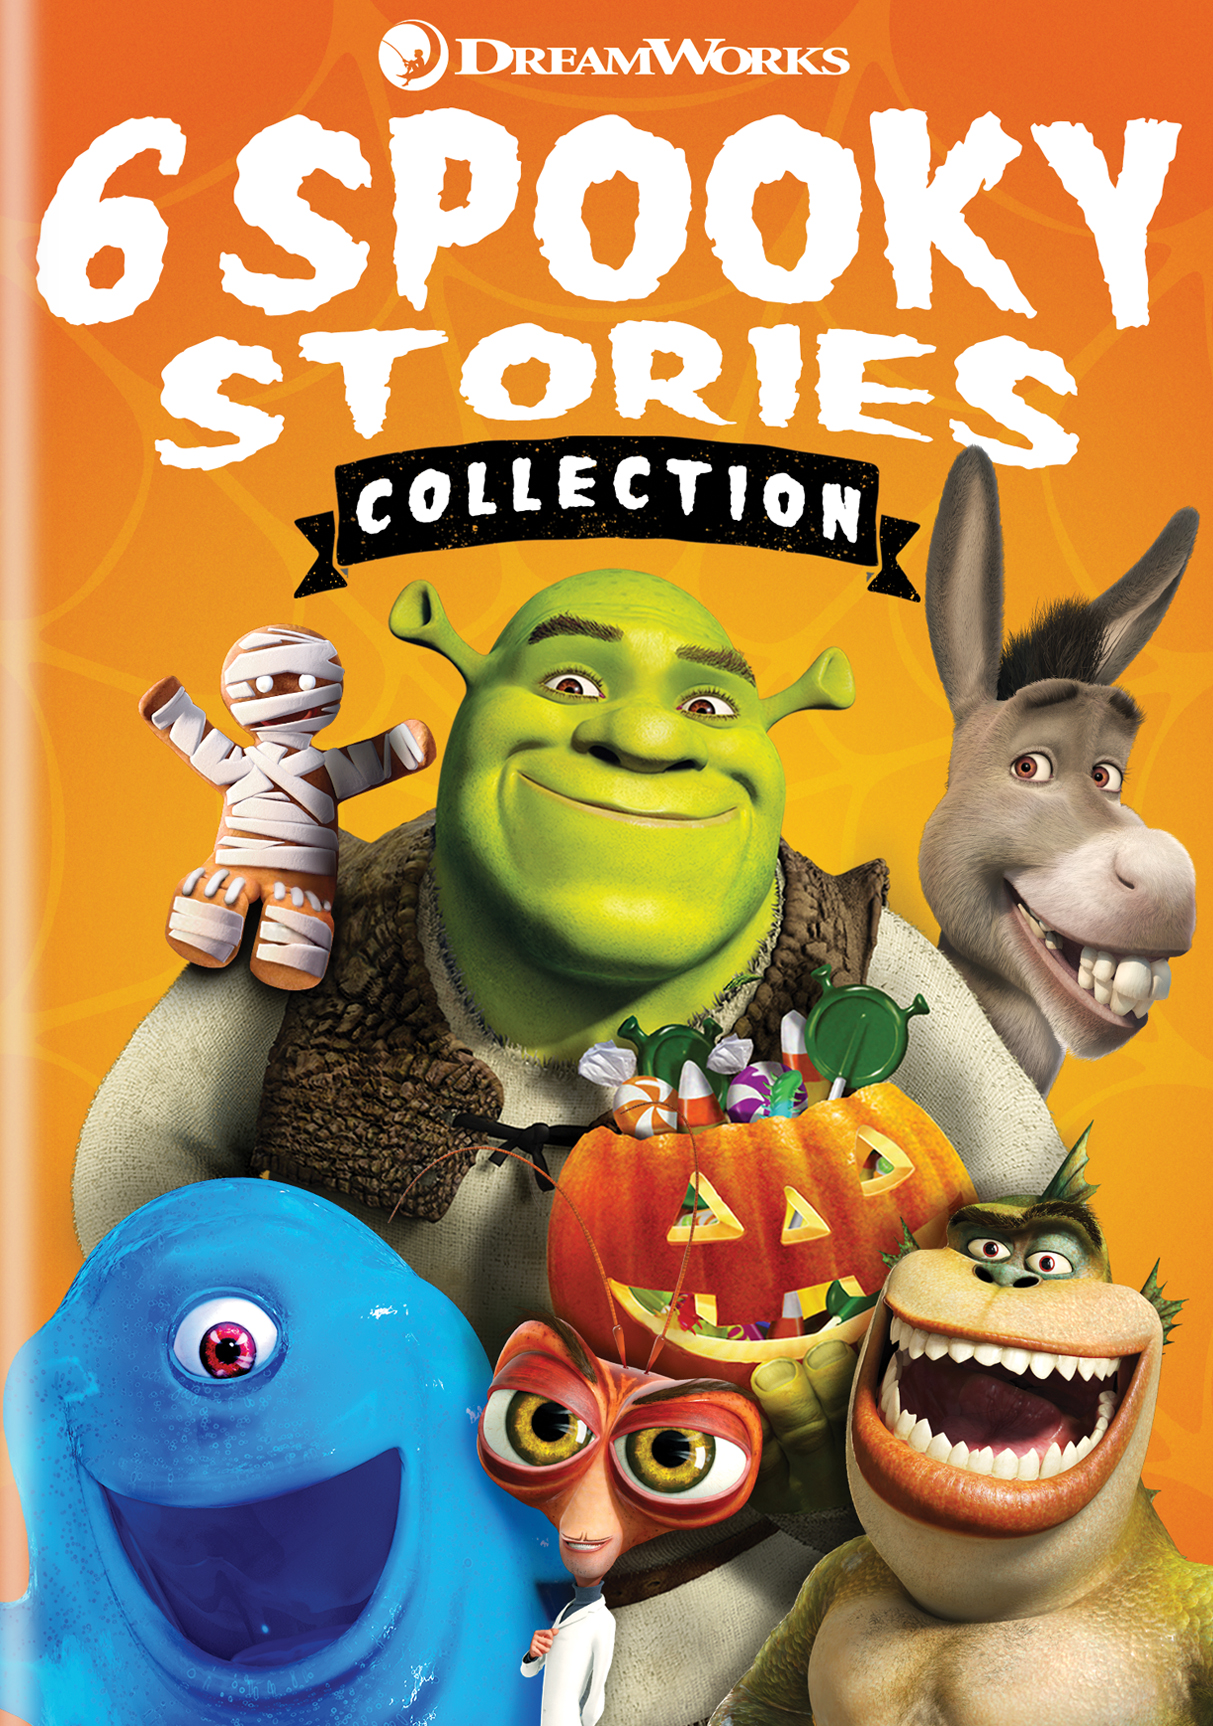 Shrek Collection  Indreams - Dreams™ companion website